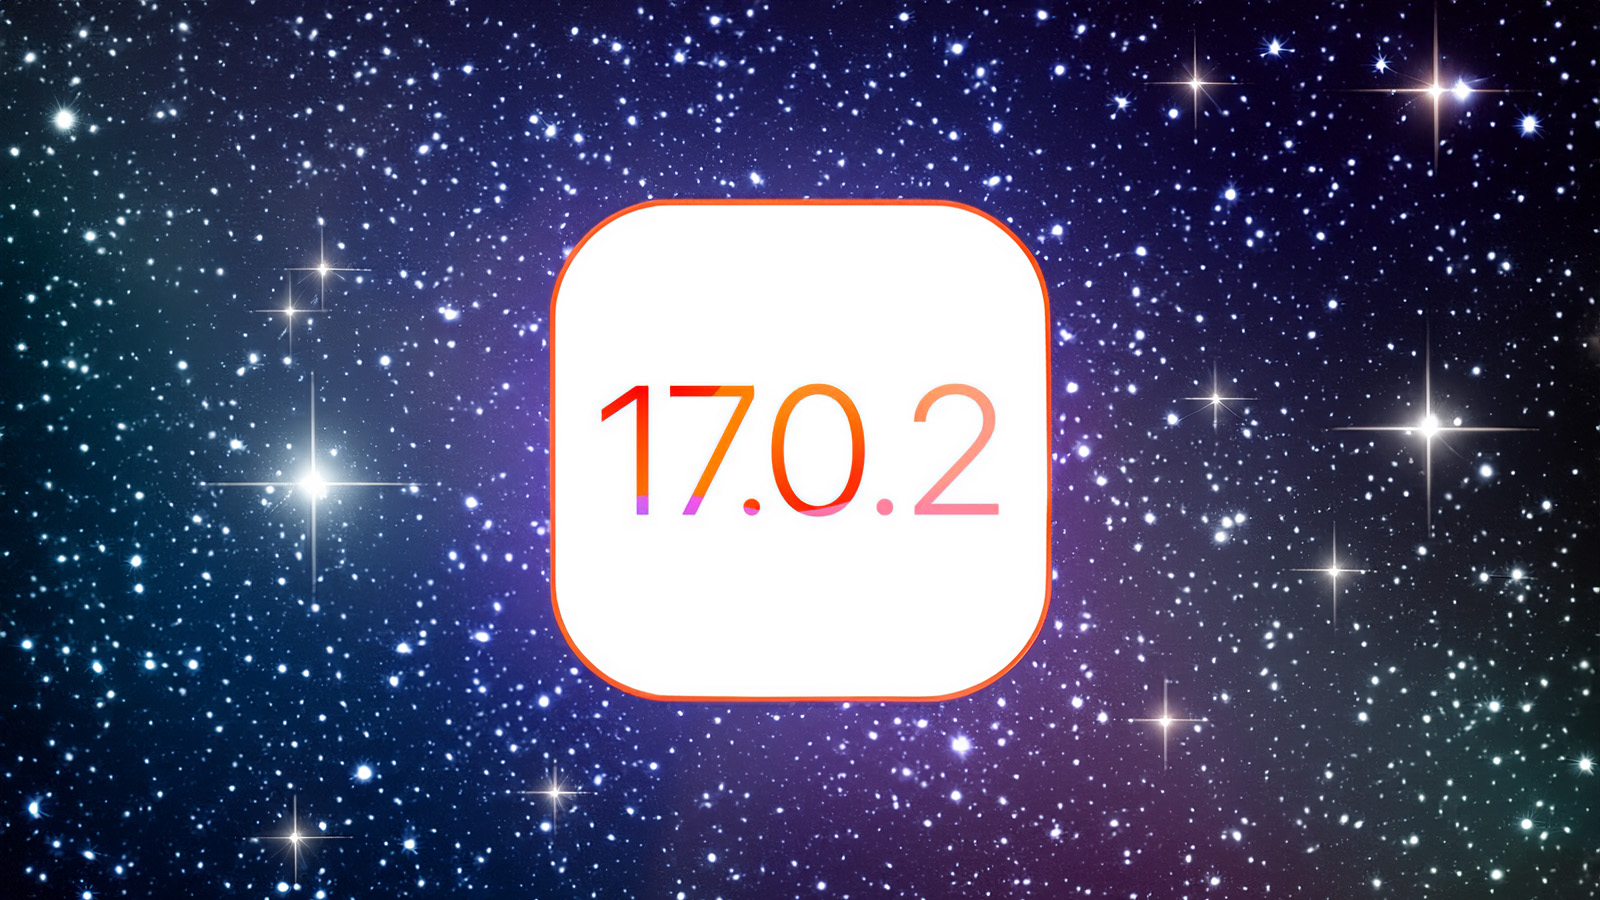 De iPhoneIslam.com, fondo de pantalla estrellado con texto 17 7 2 con Apple e iOS.